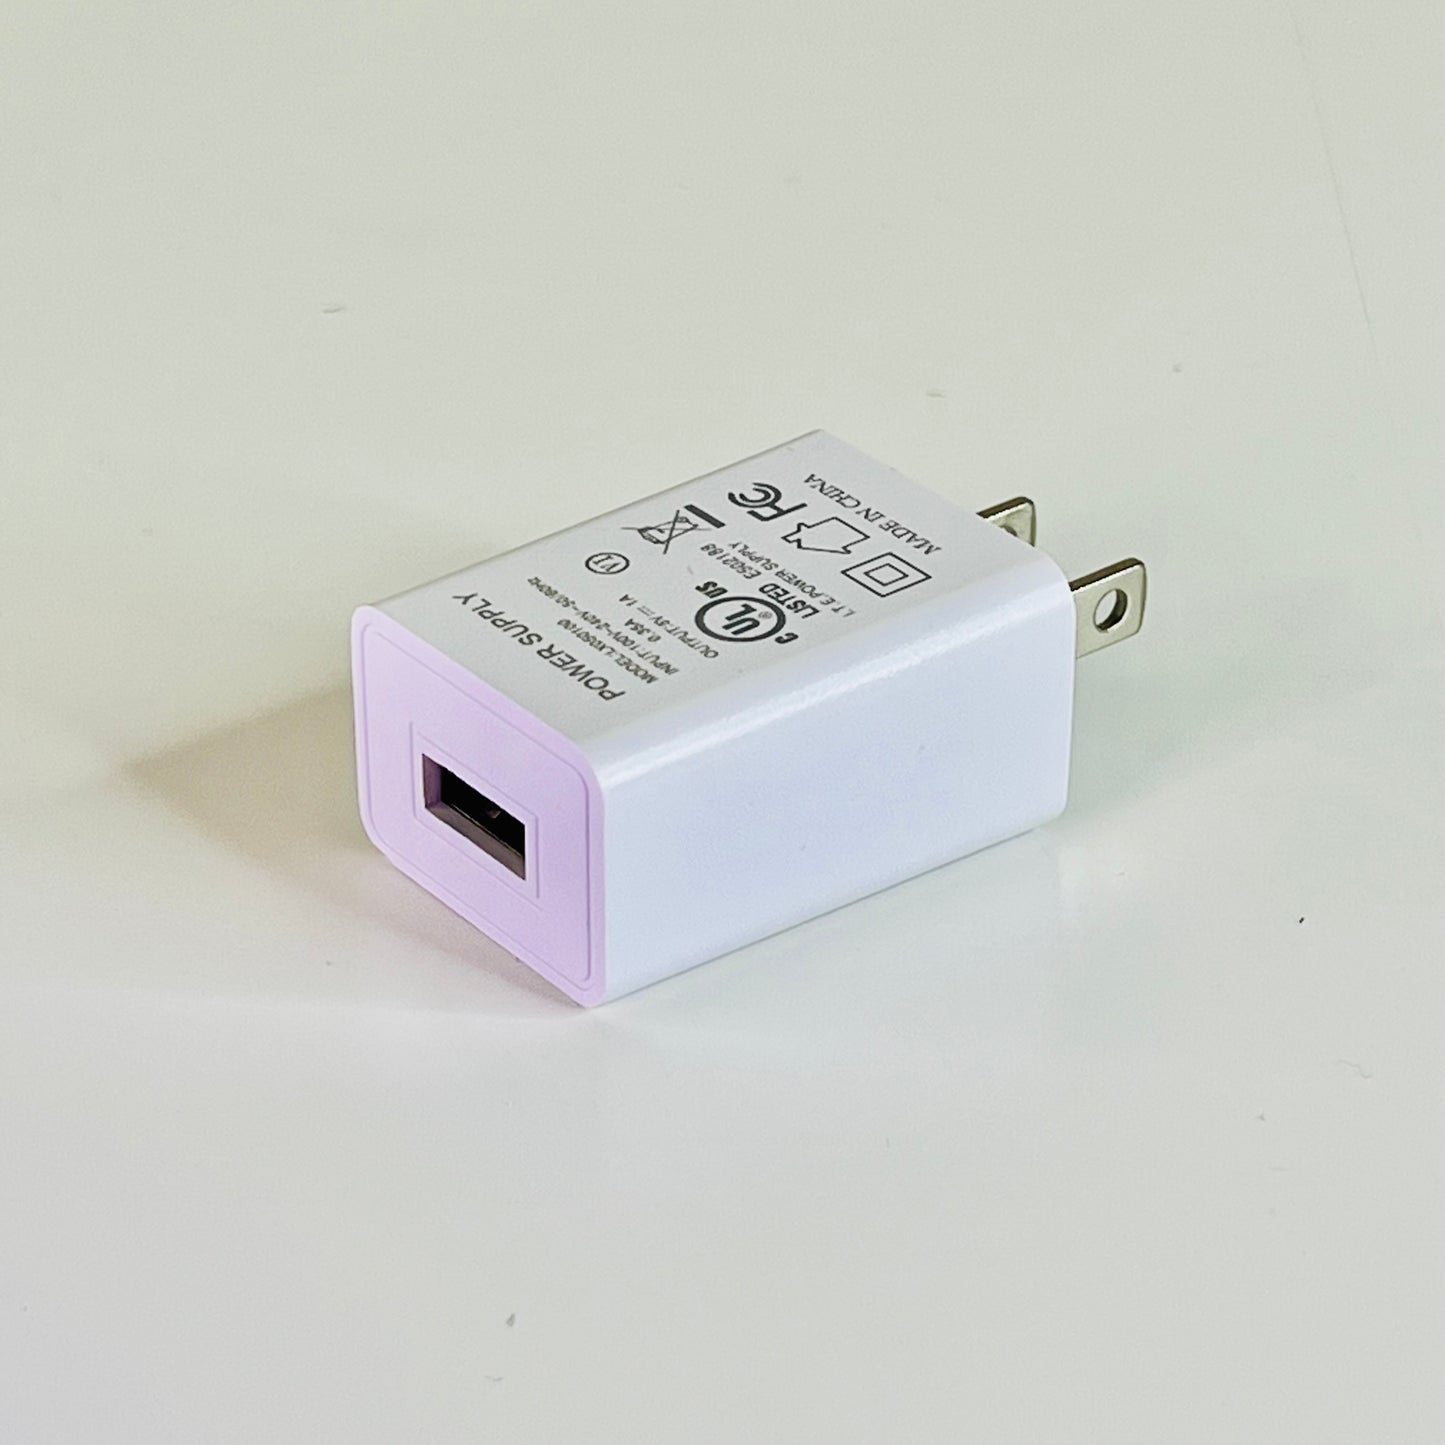 Kawaii Lighting Creator Kit - USB Wall Plug.